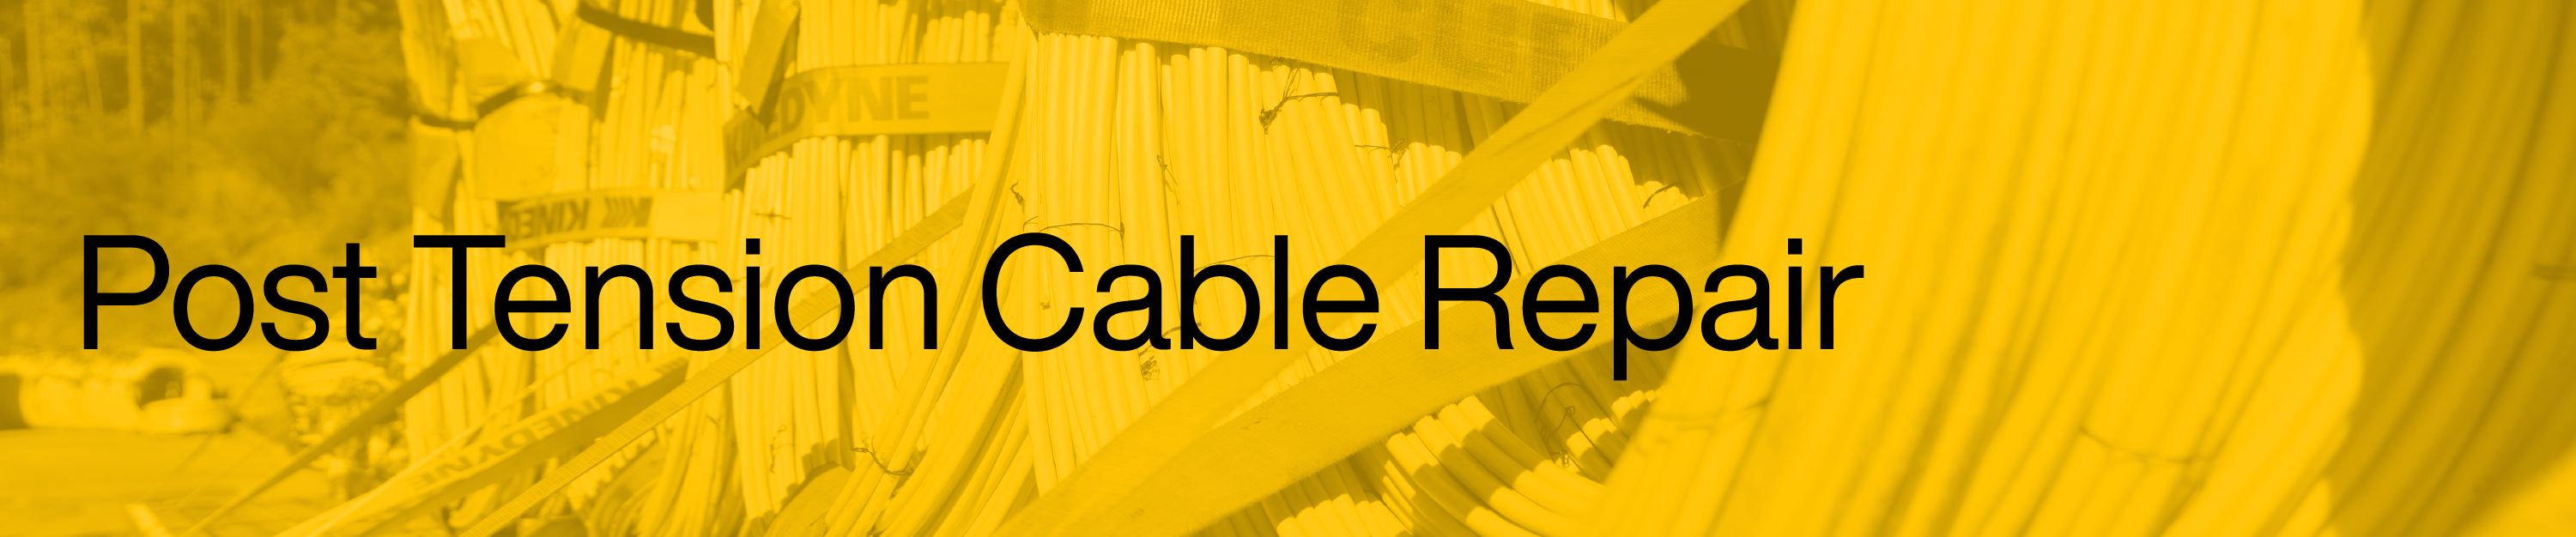 Post Tension Cable Repair